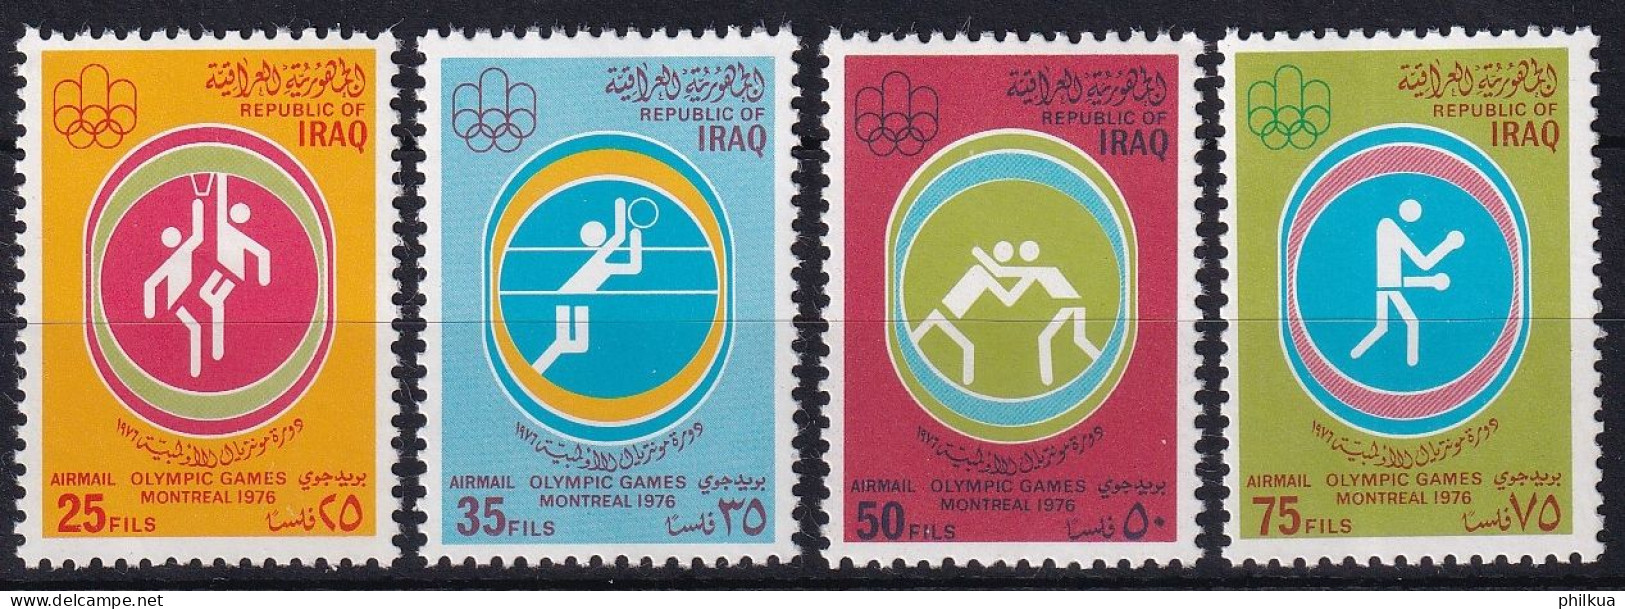 MiNr. 871 - 874 Irak 1976, 30. Juli. Olympische Sommerspiele, Montreal - Postfrisch/**/MNH - Iraq